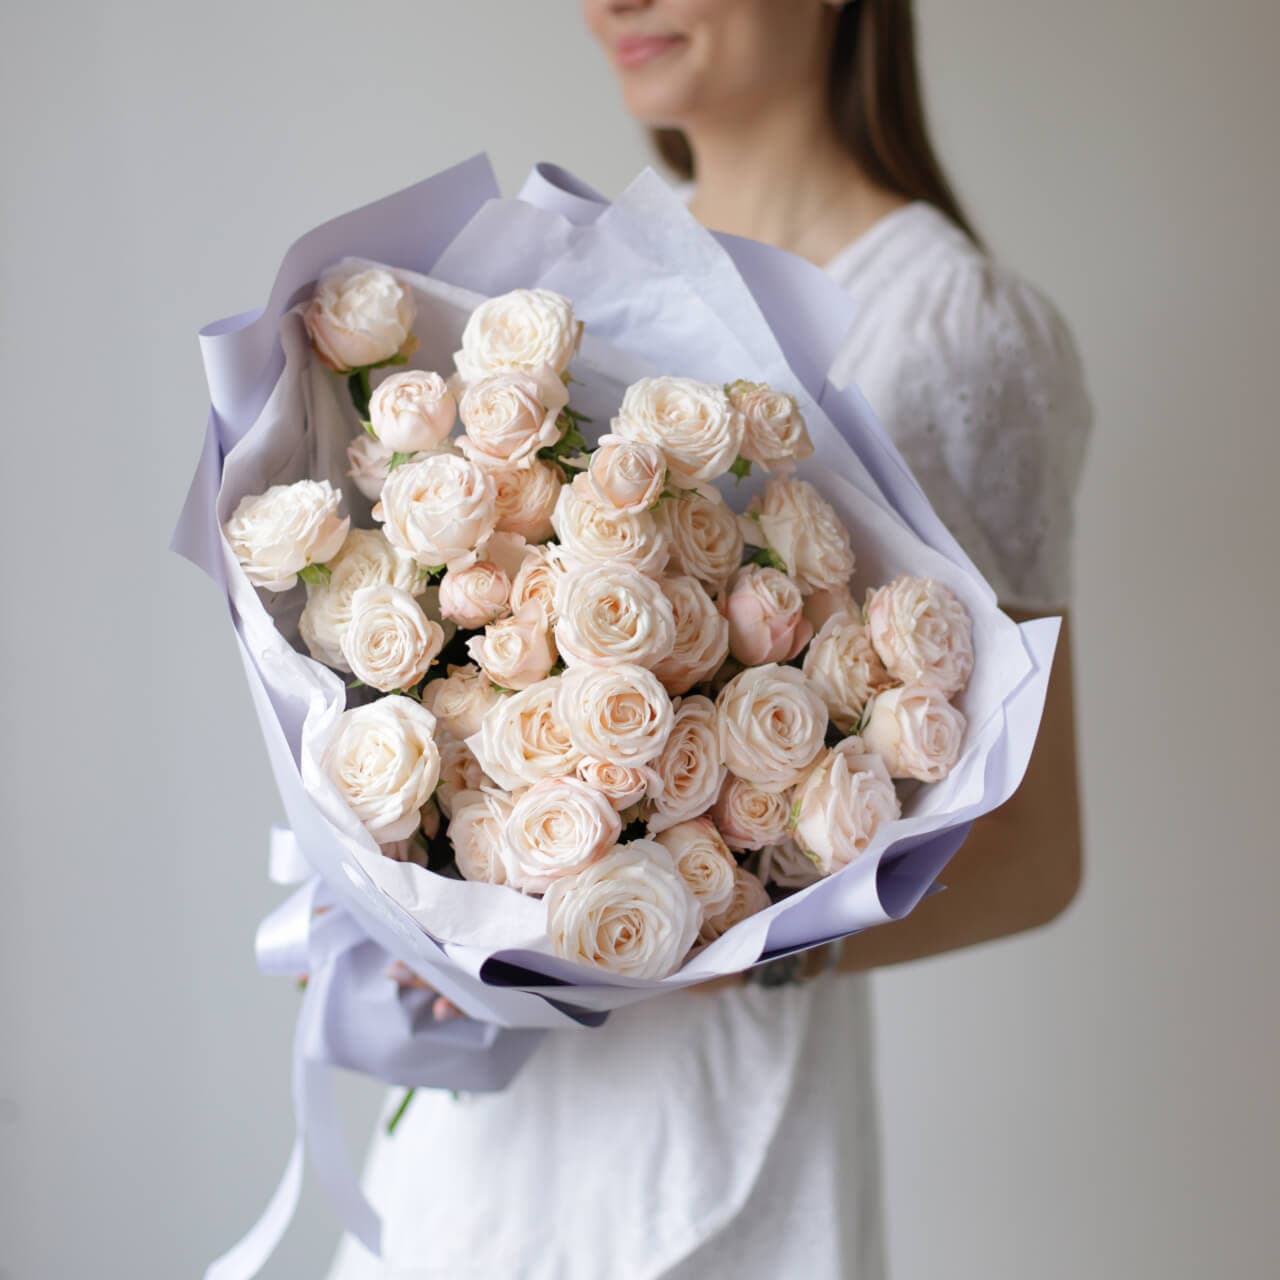 Кустовые пионовидные розы кремового оттенка в лавандовом оформлении №1494 - Фото 36